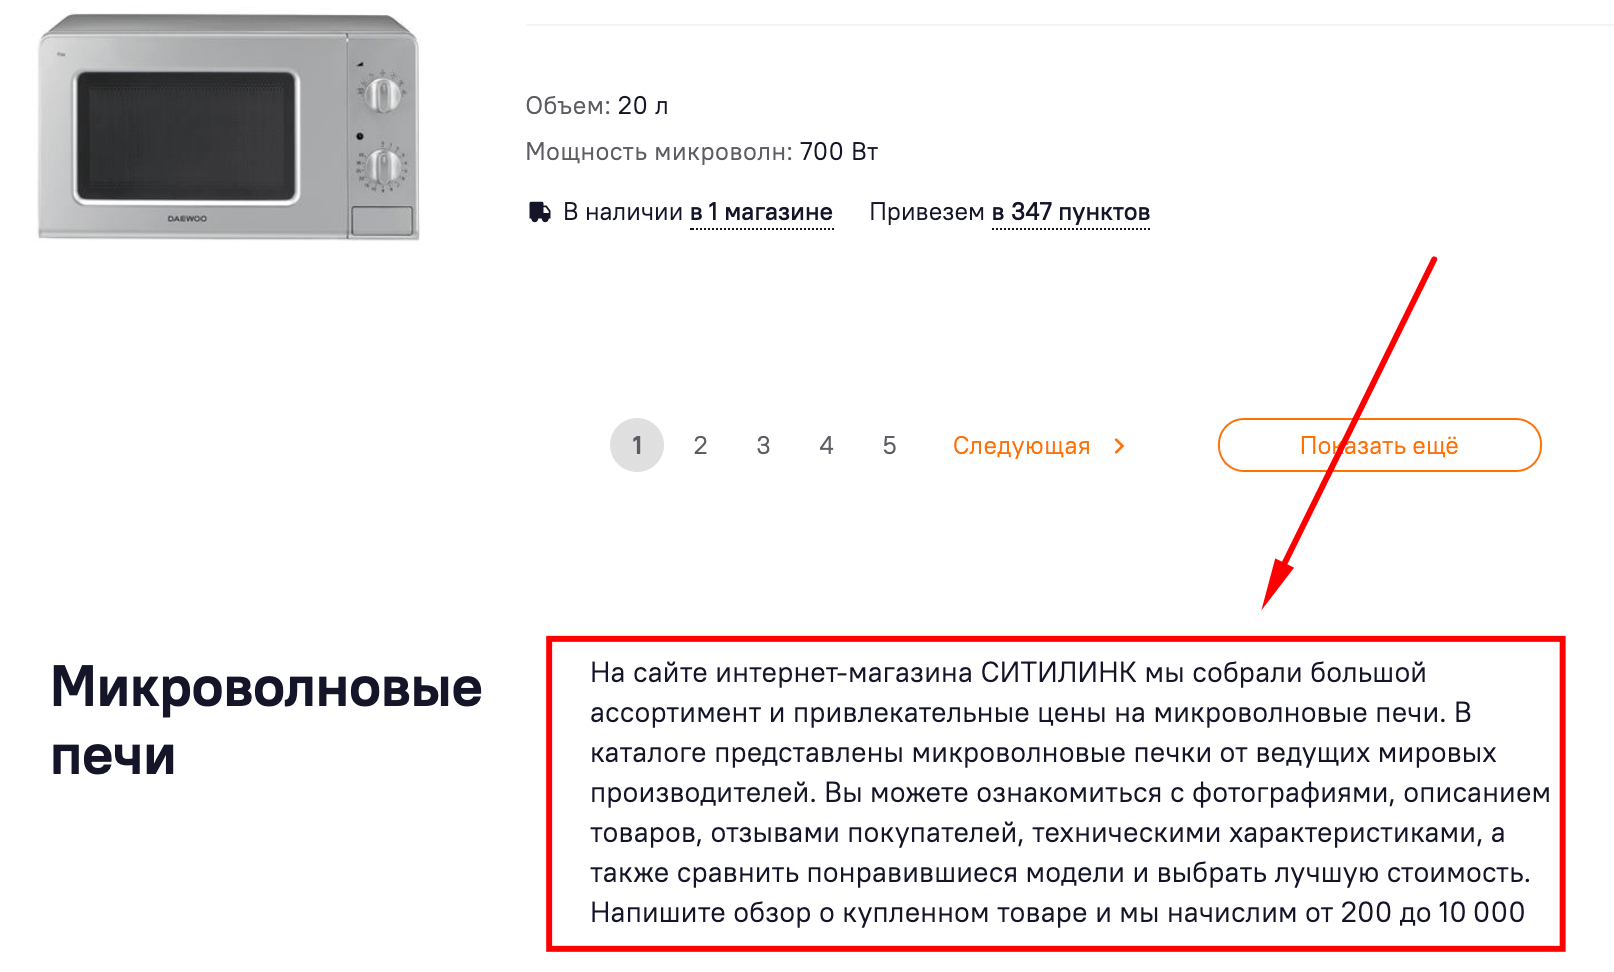 Пример SEO-текста на странице микроволновок в интернет-магазине citilink.ru